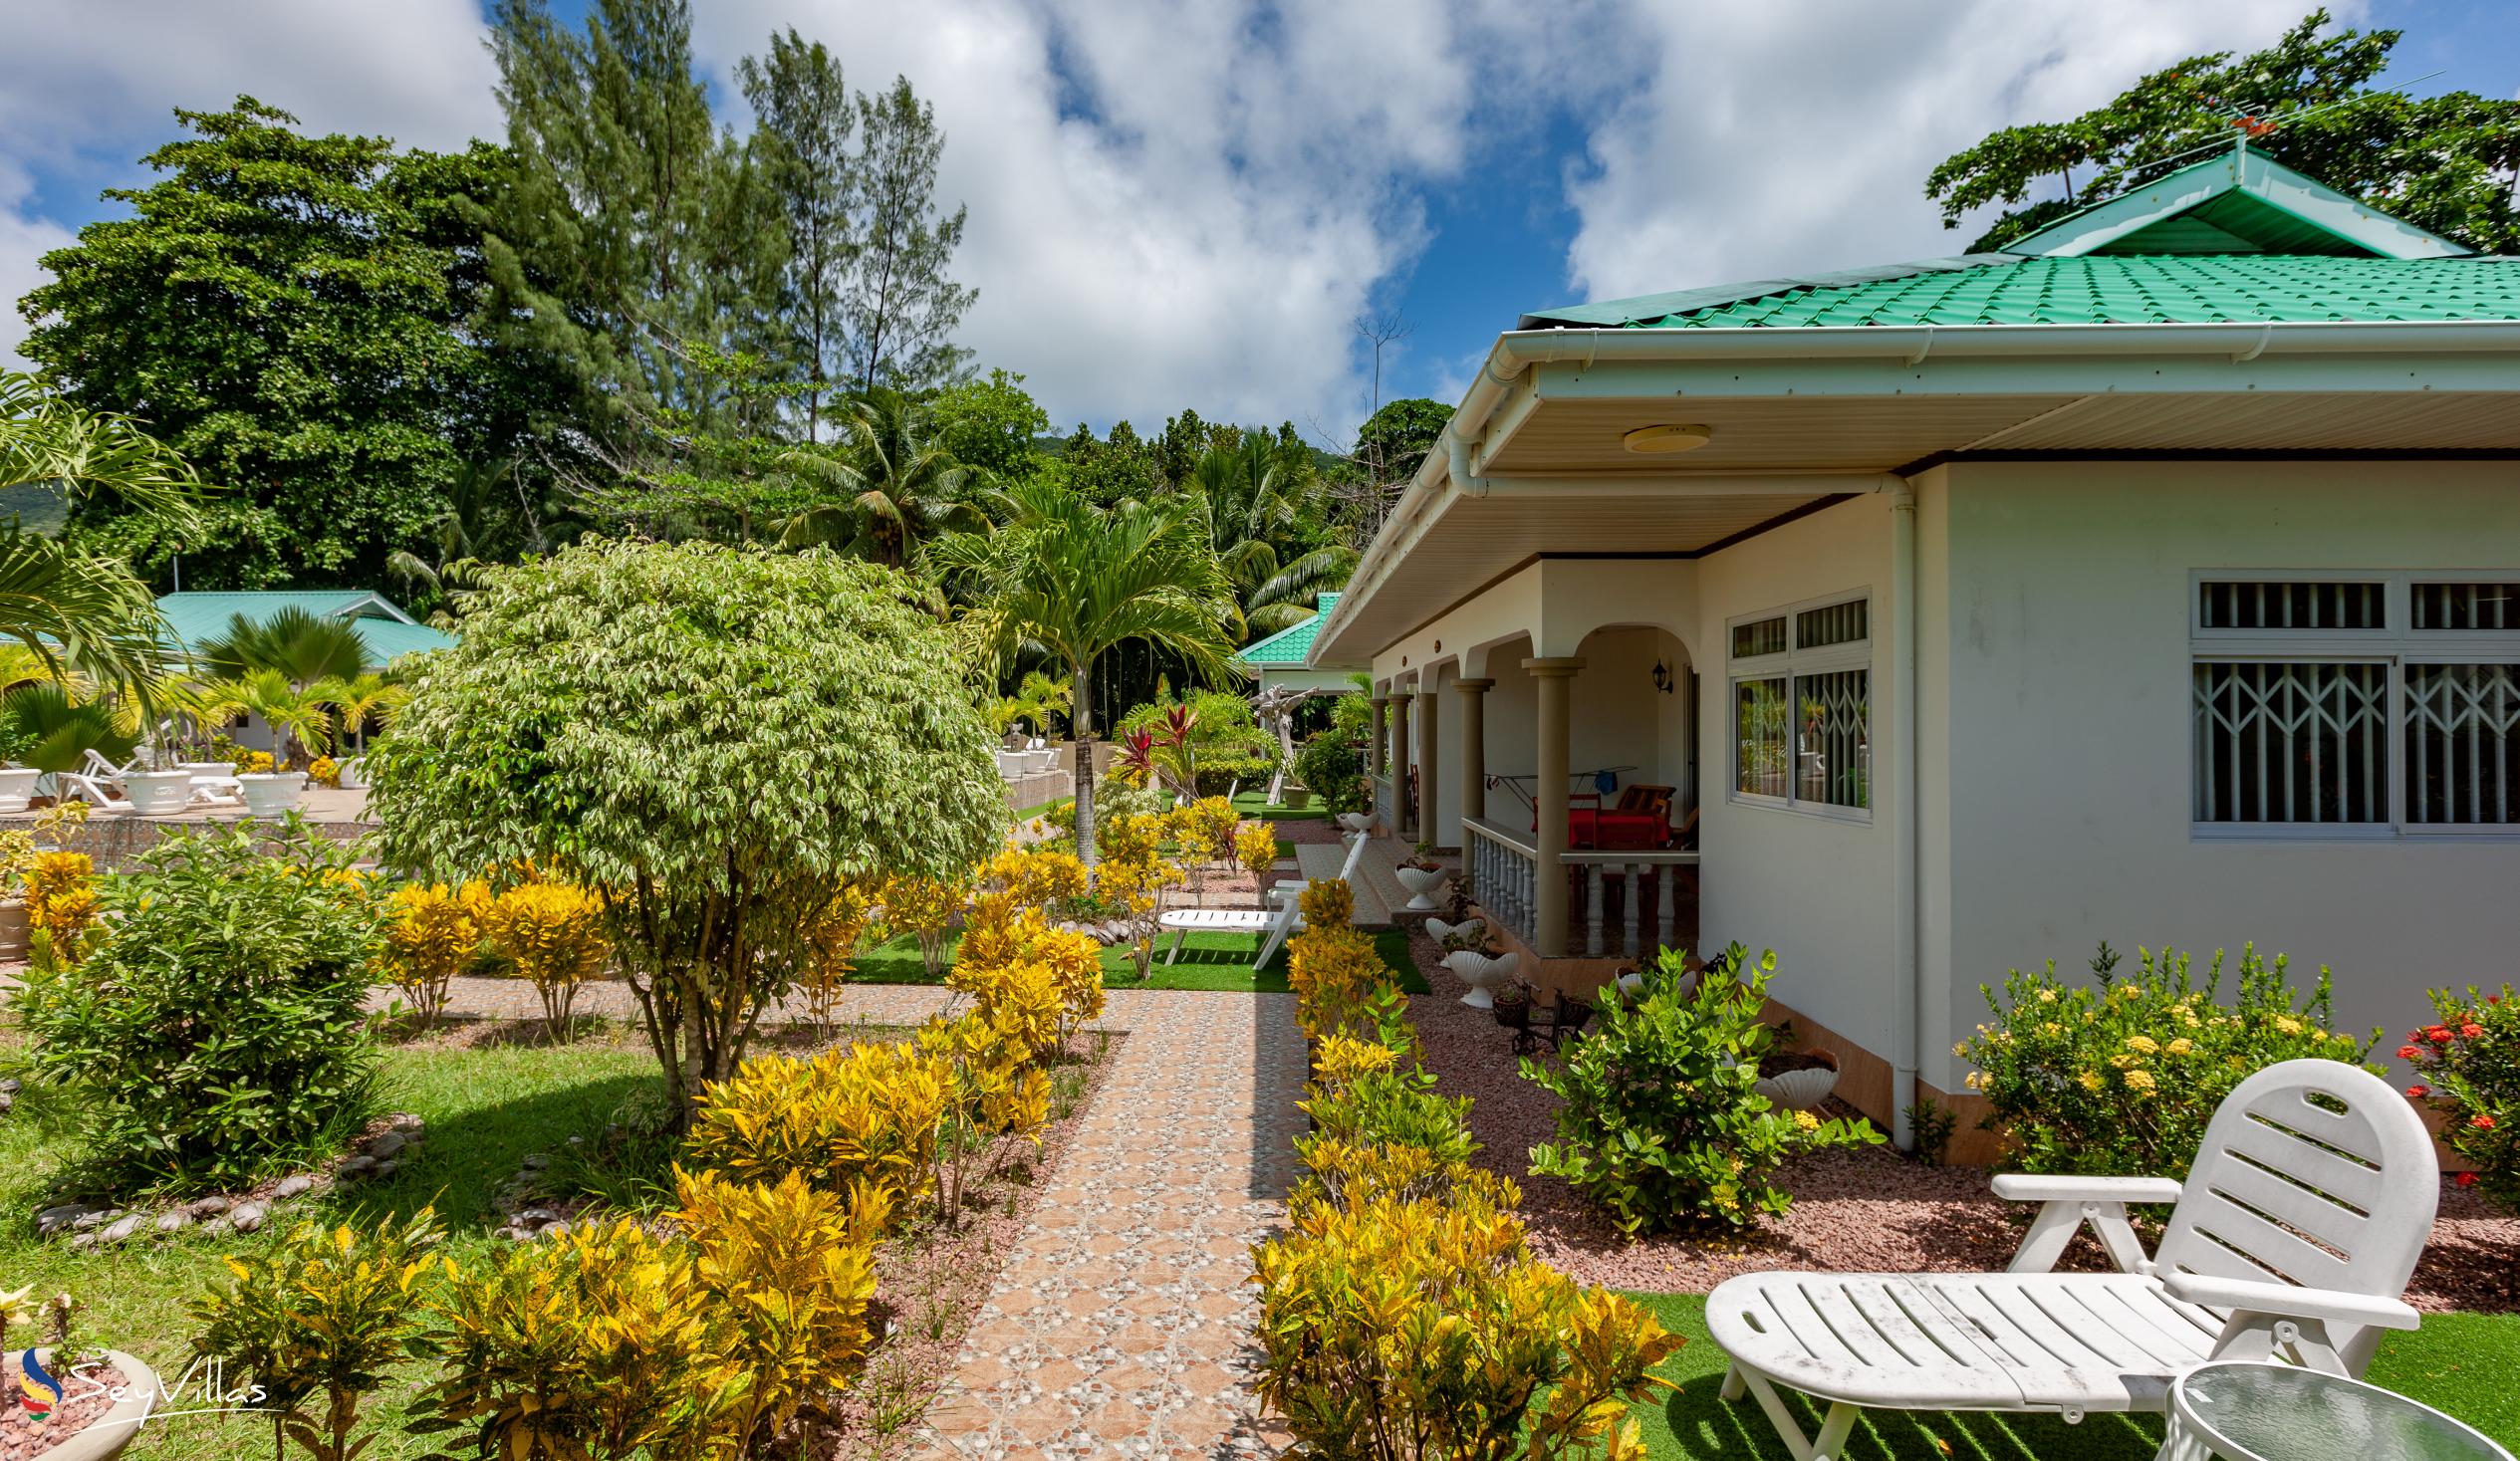 Foto 20: Belle Vacance Self Catering - Aussenbereich - Praslin (Seychellen)